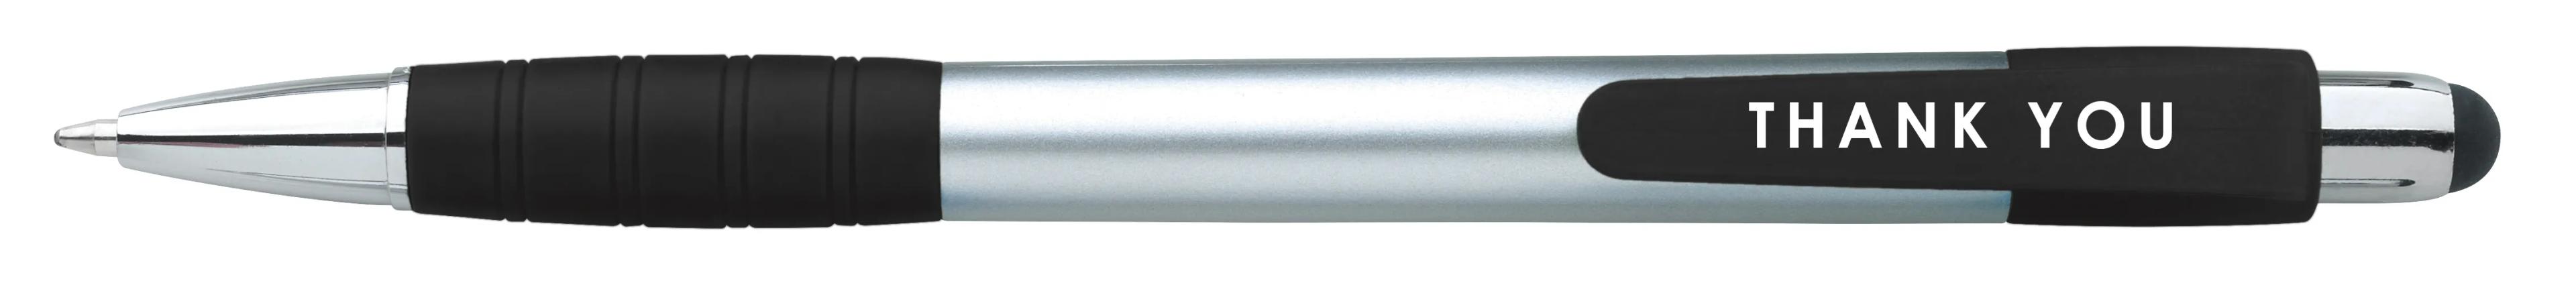 Silver Element Stylus Pen 28 of 53